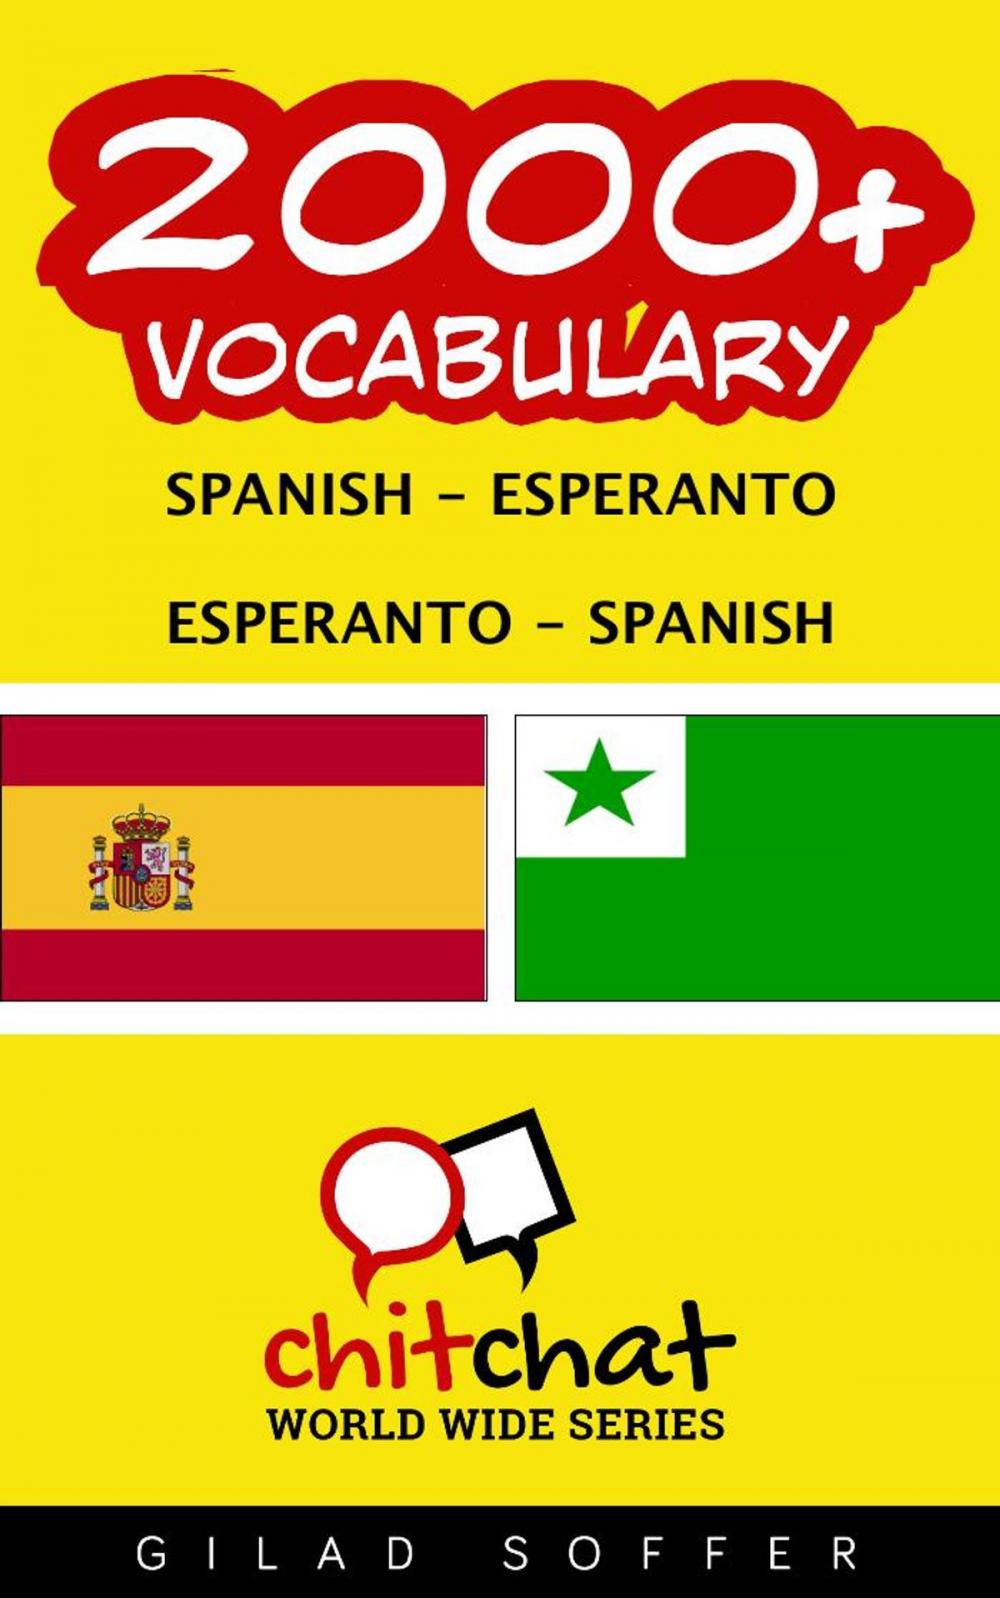 Big bigCover of 2000+ Vocabulary Spanish - Esperanto